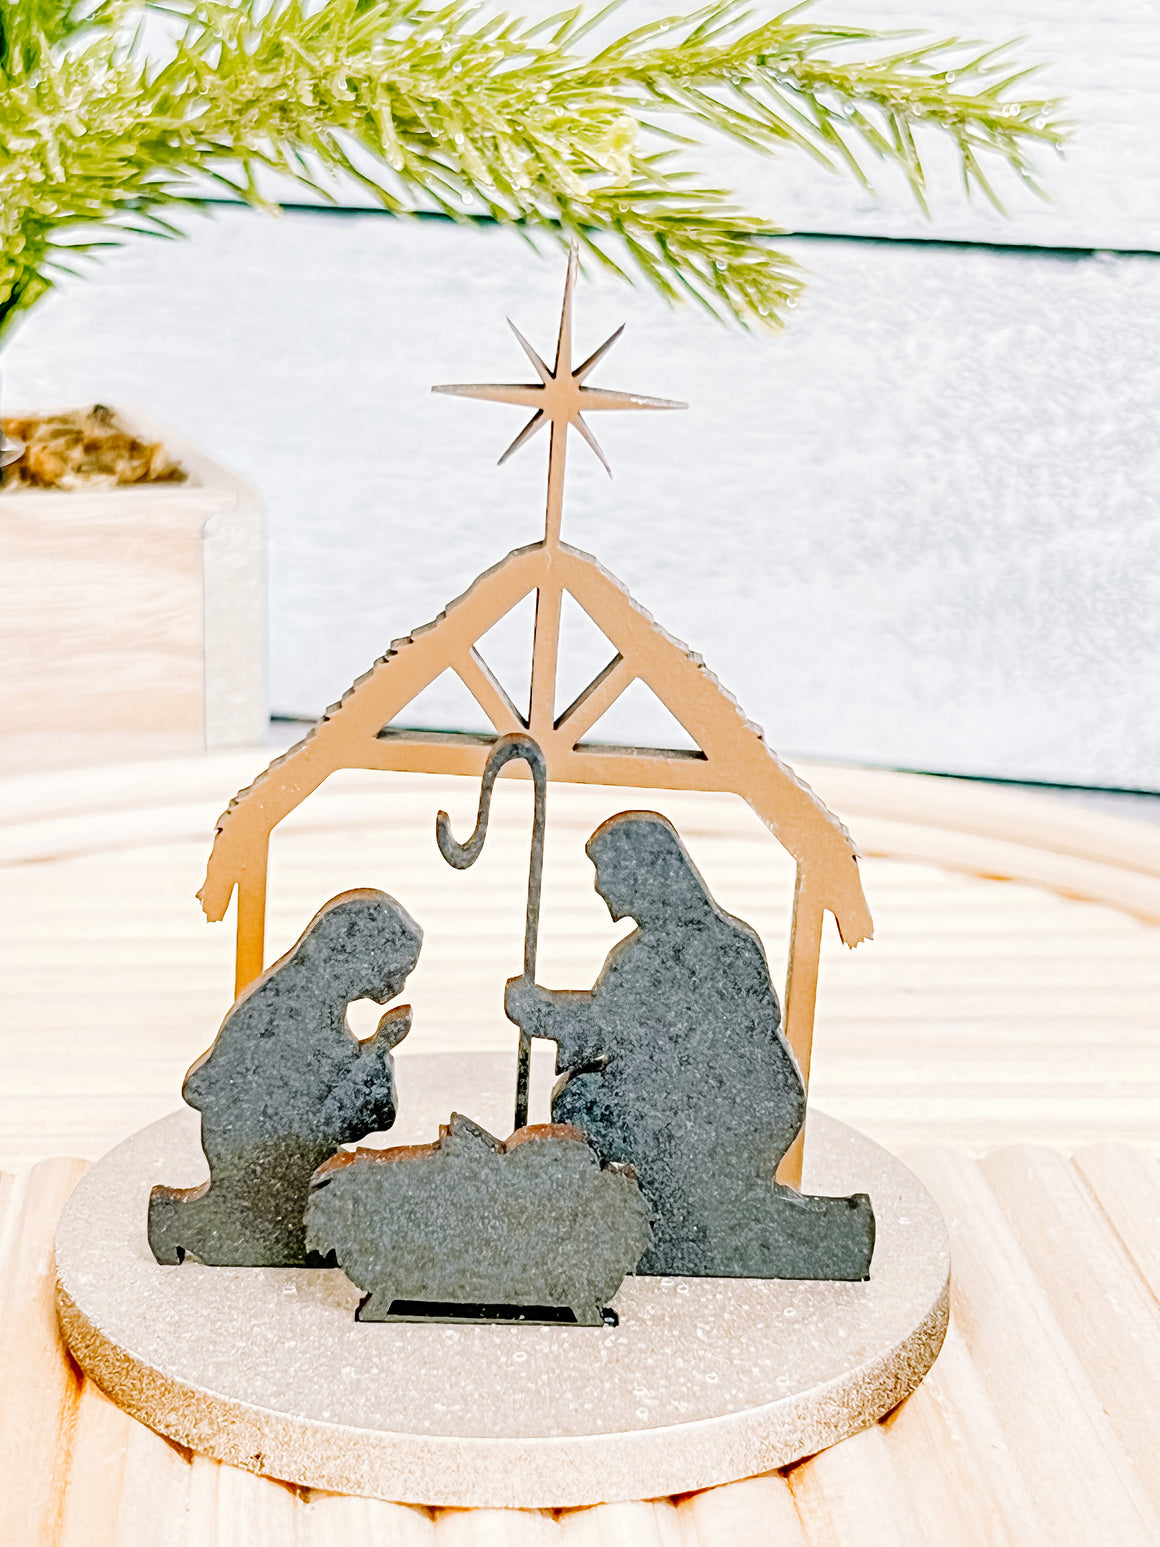 DIY Snow globe Kits | Nativity Scene